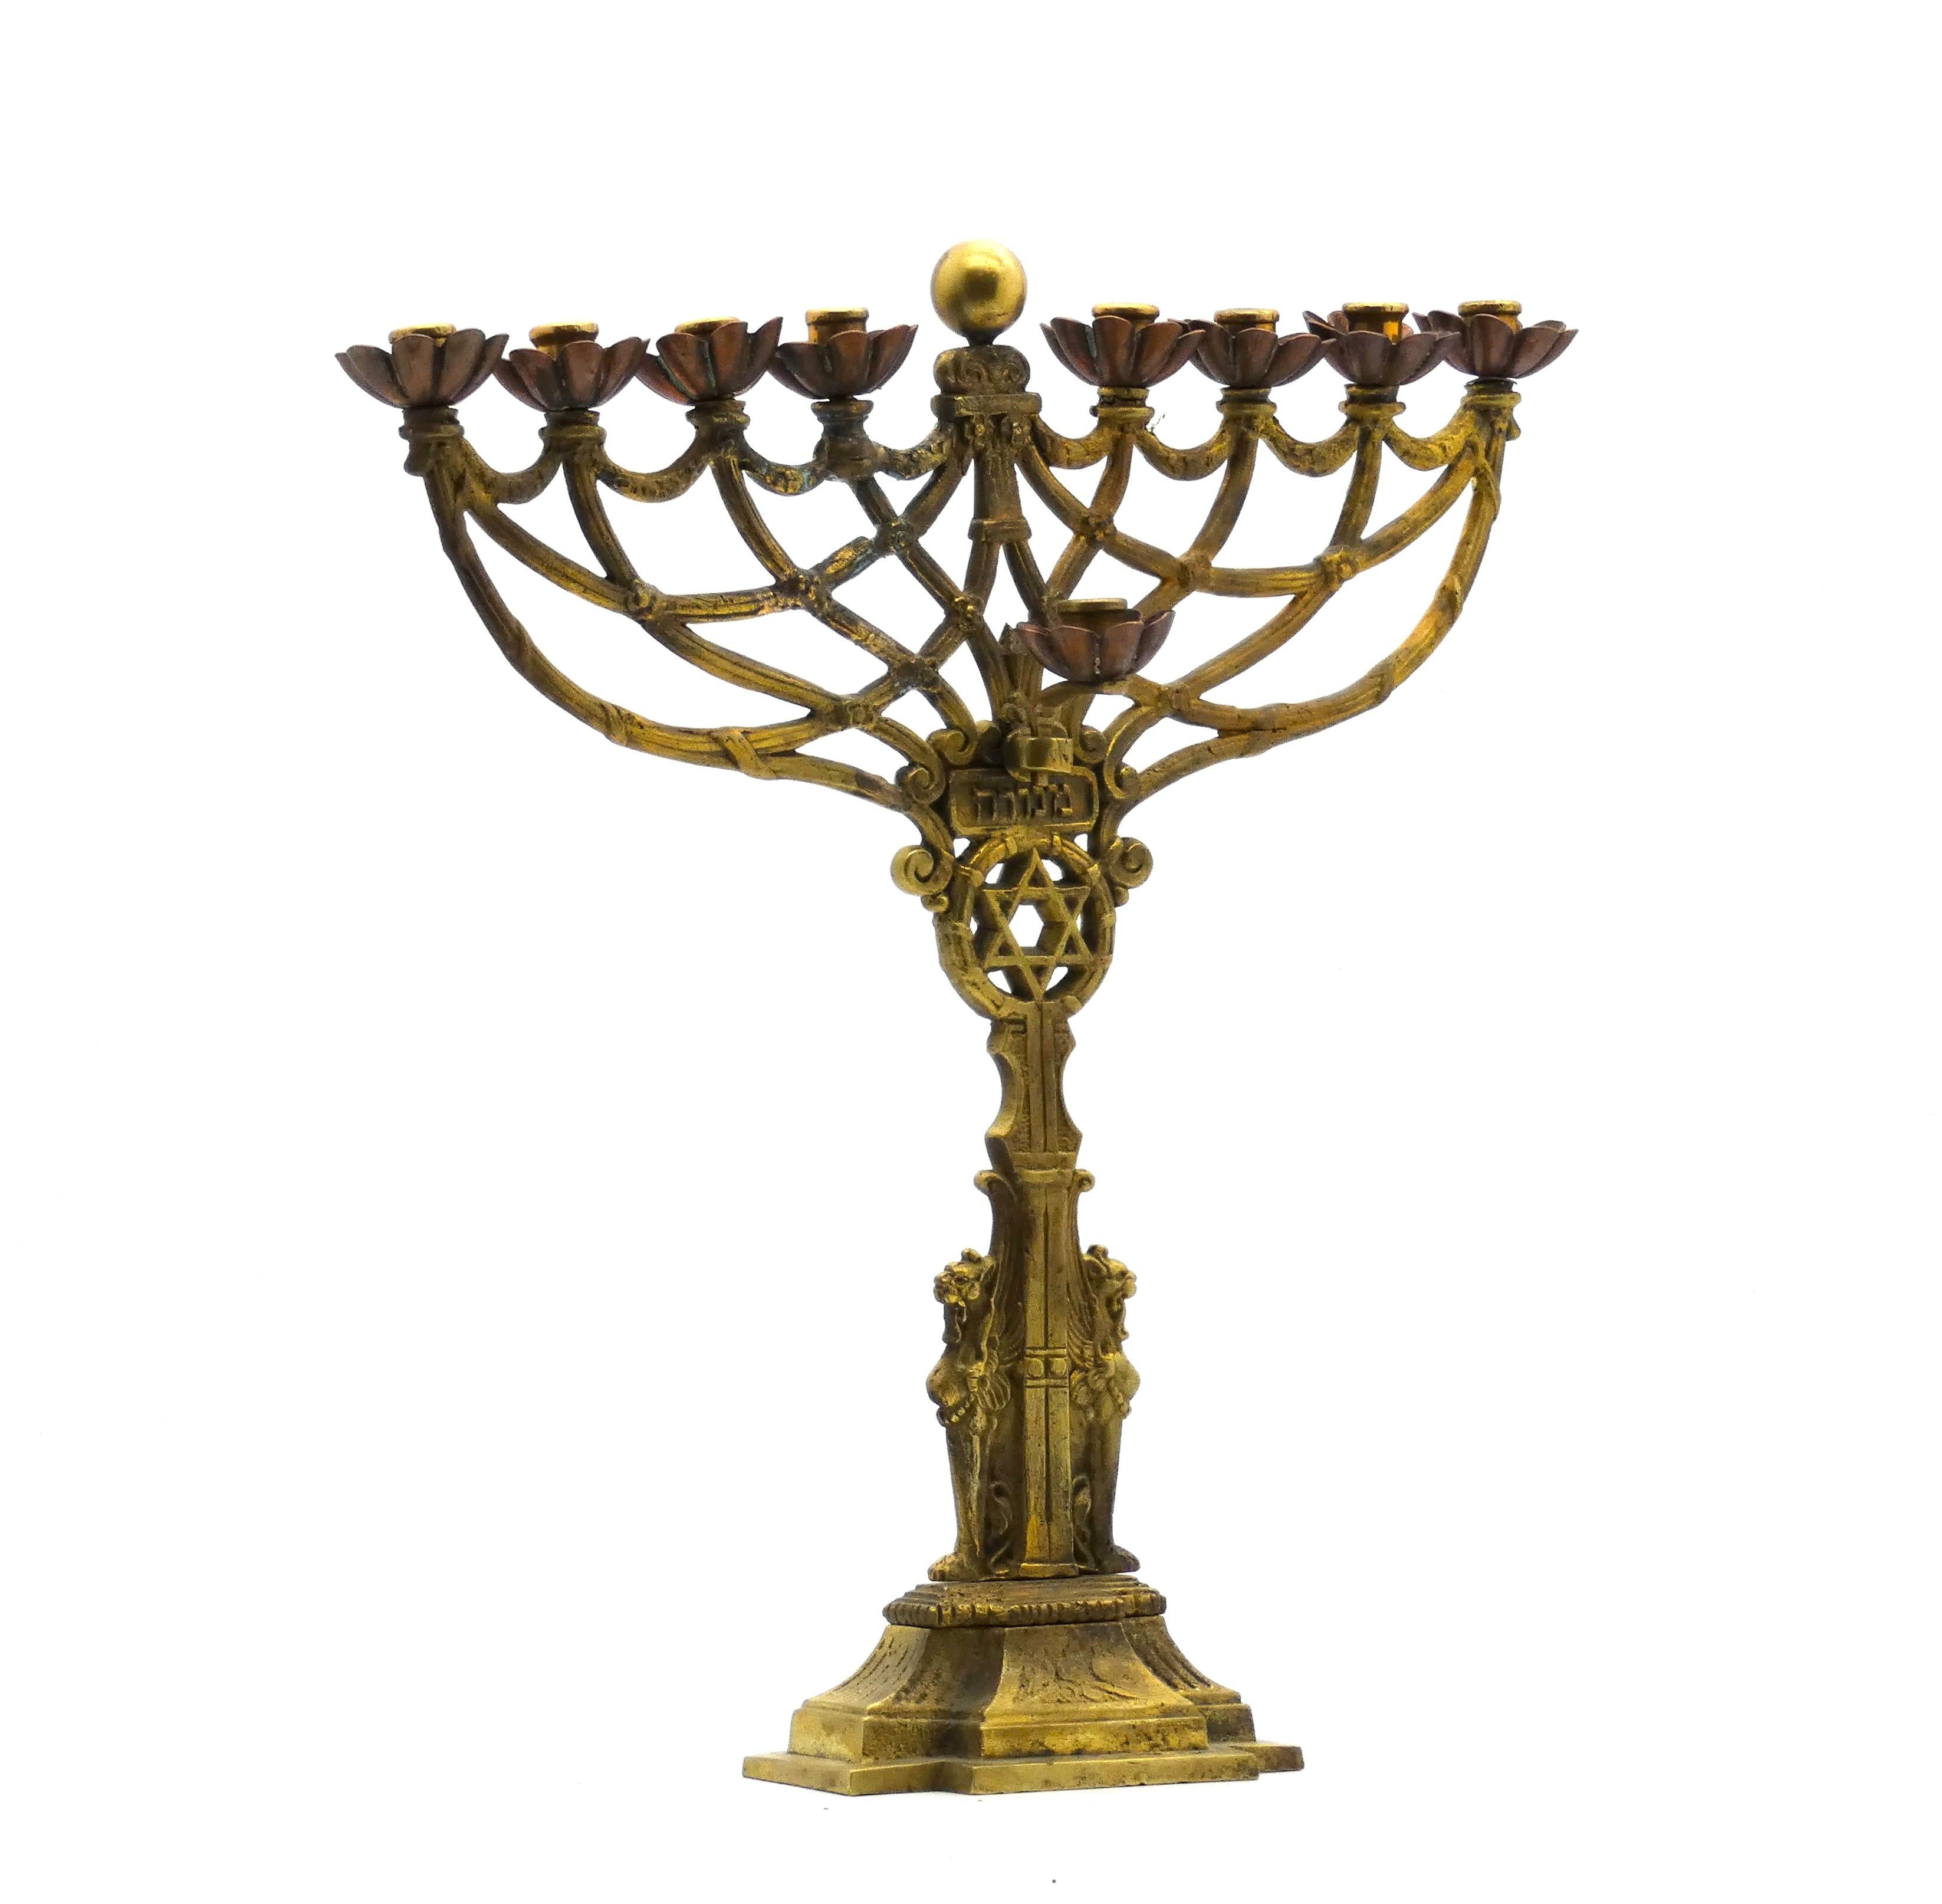 Lampe de Hanoukka de style égyptien fabriquée en Allemagne à la fin du XIXe siècle.

En laiton et en cuivre, coulés de manière experte, ils présentent des motifs très détaillés, tels qu'une étoile de David dans une couronne de vigne, surmontée d'une